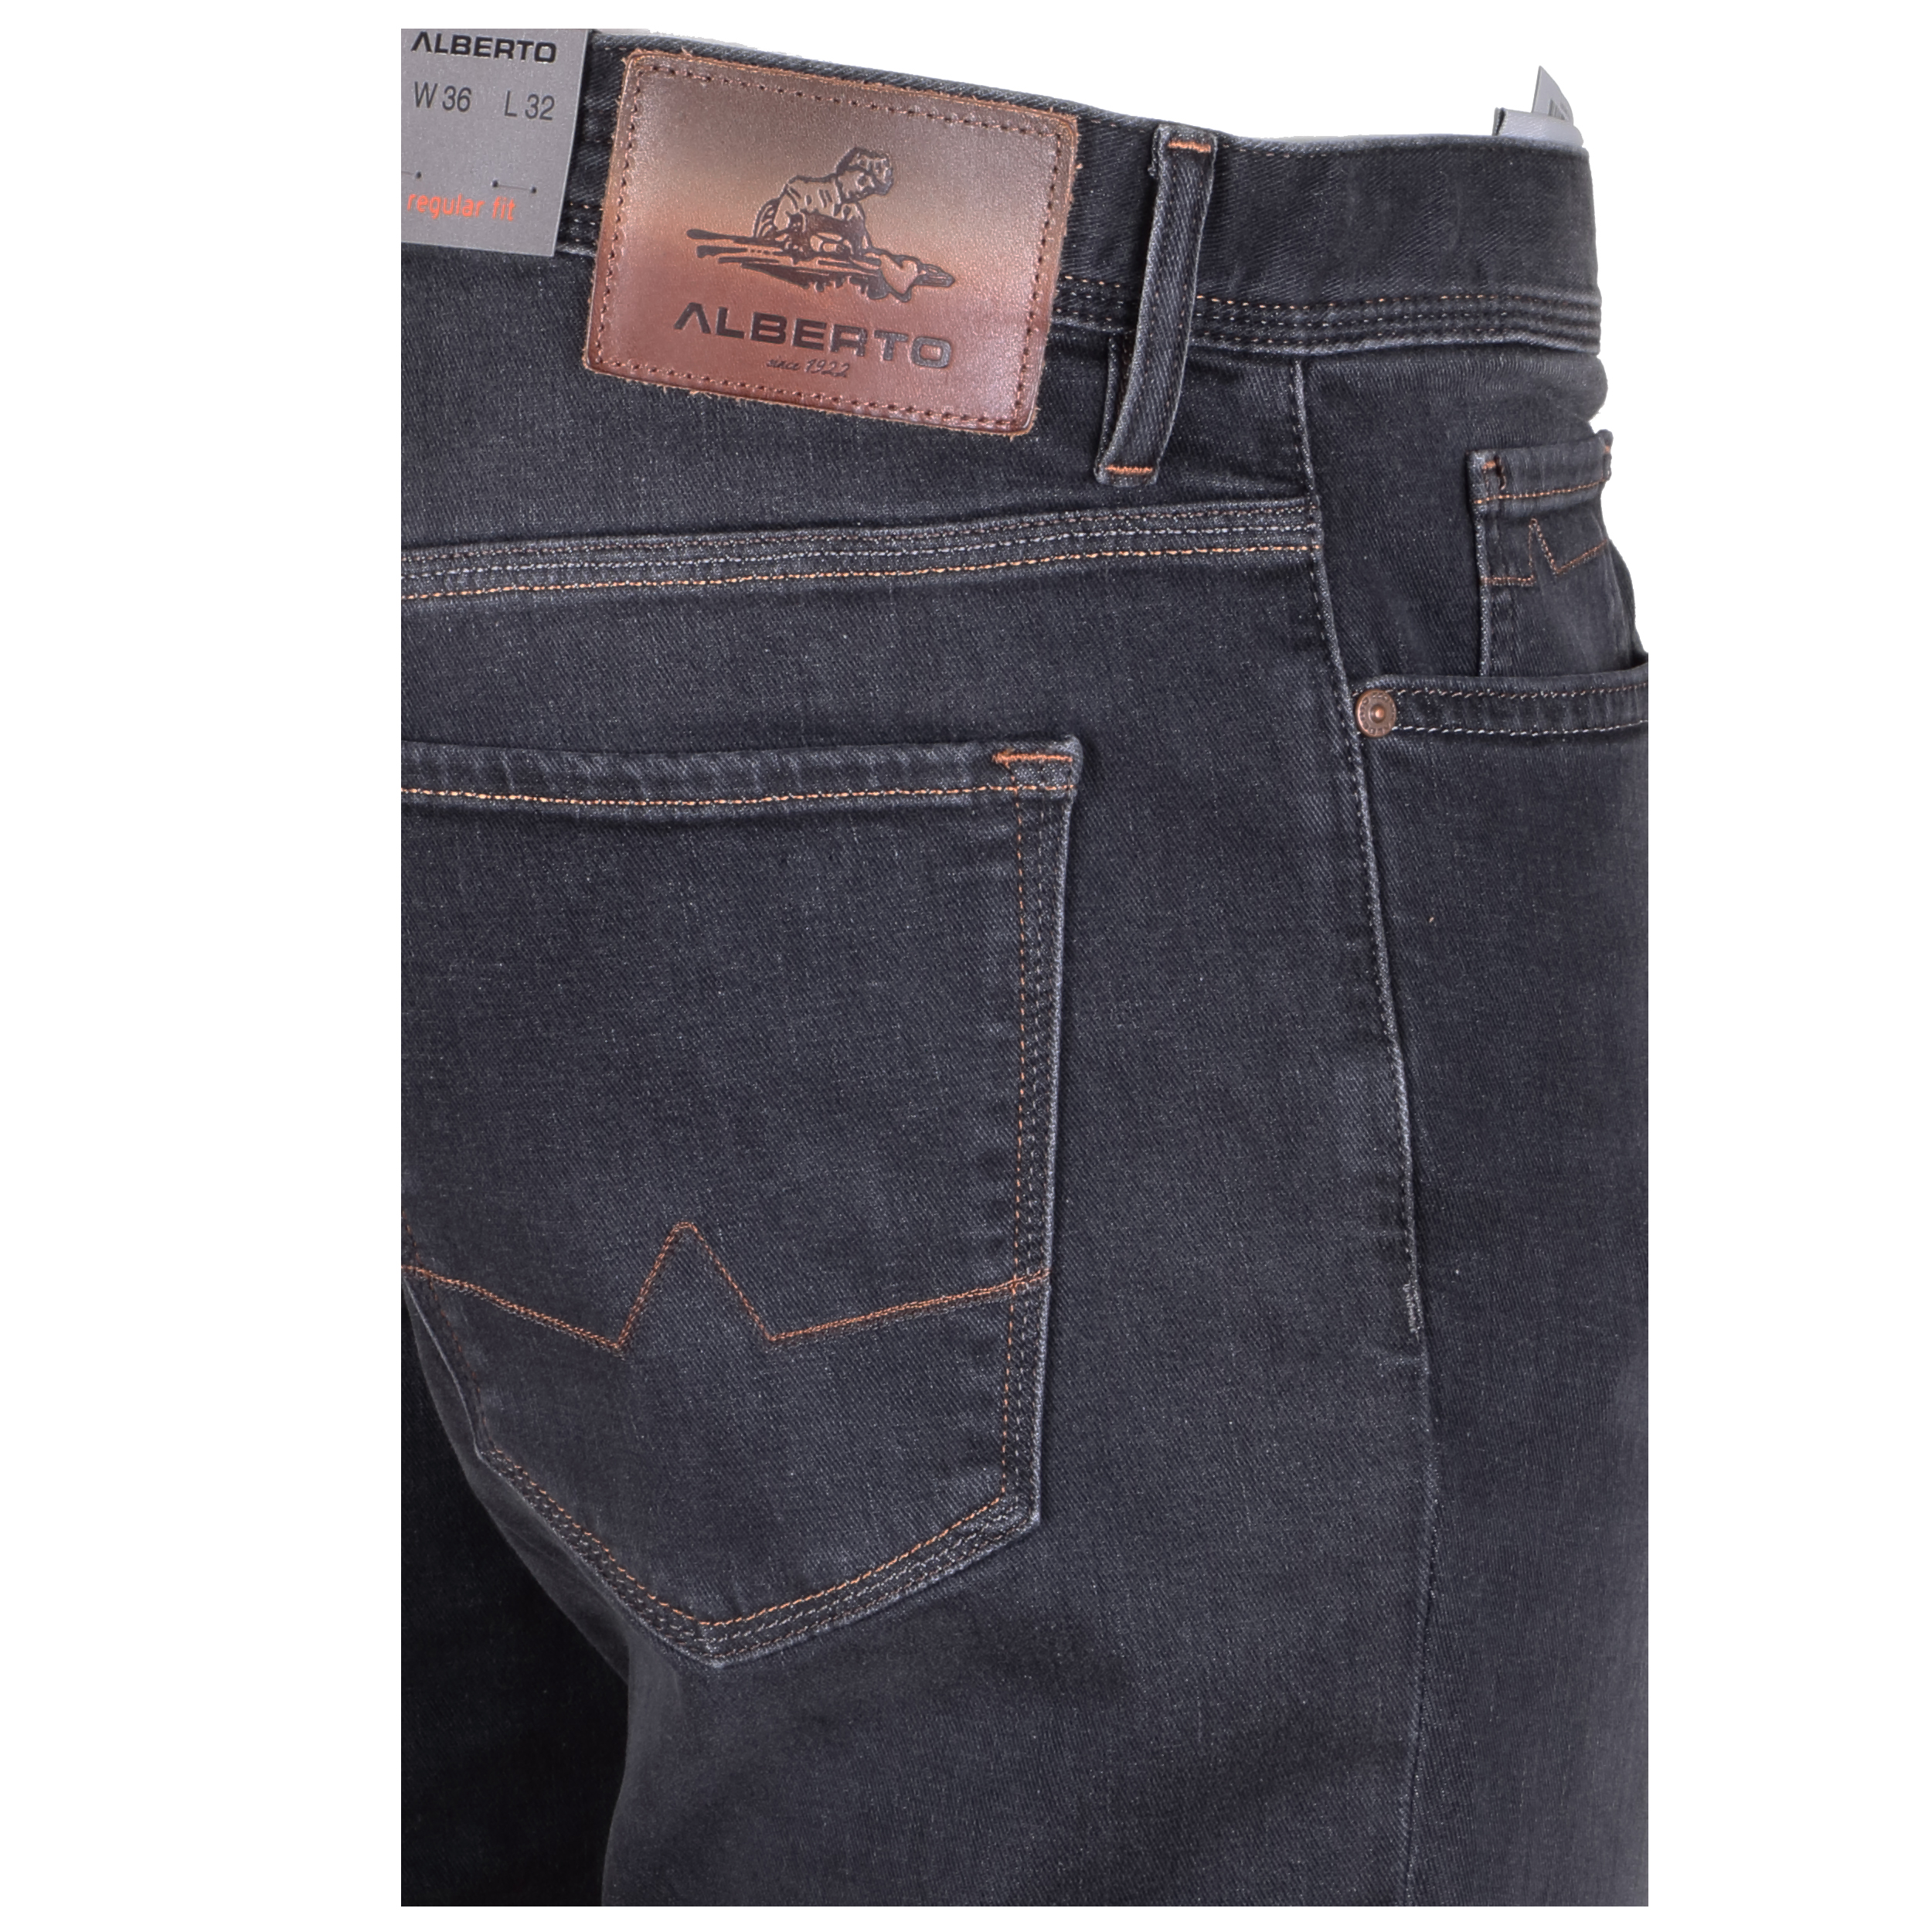 Alberto Herren Jeans Pipe regular fit - grey 36/32